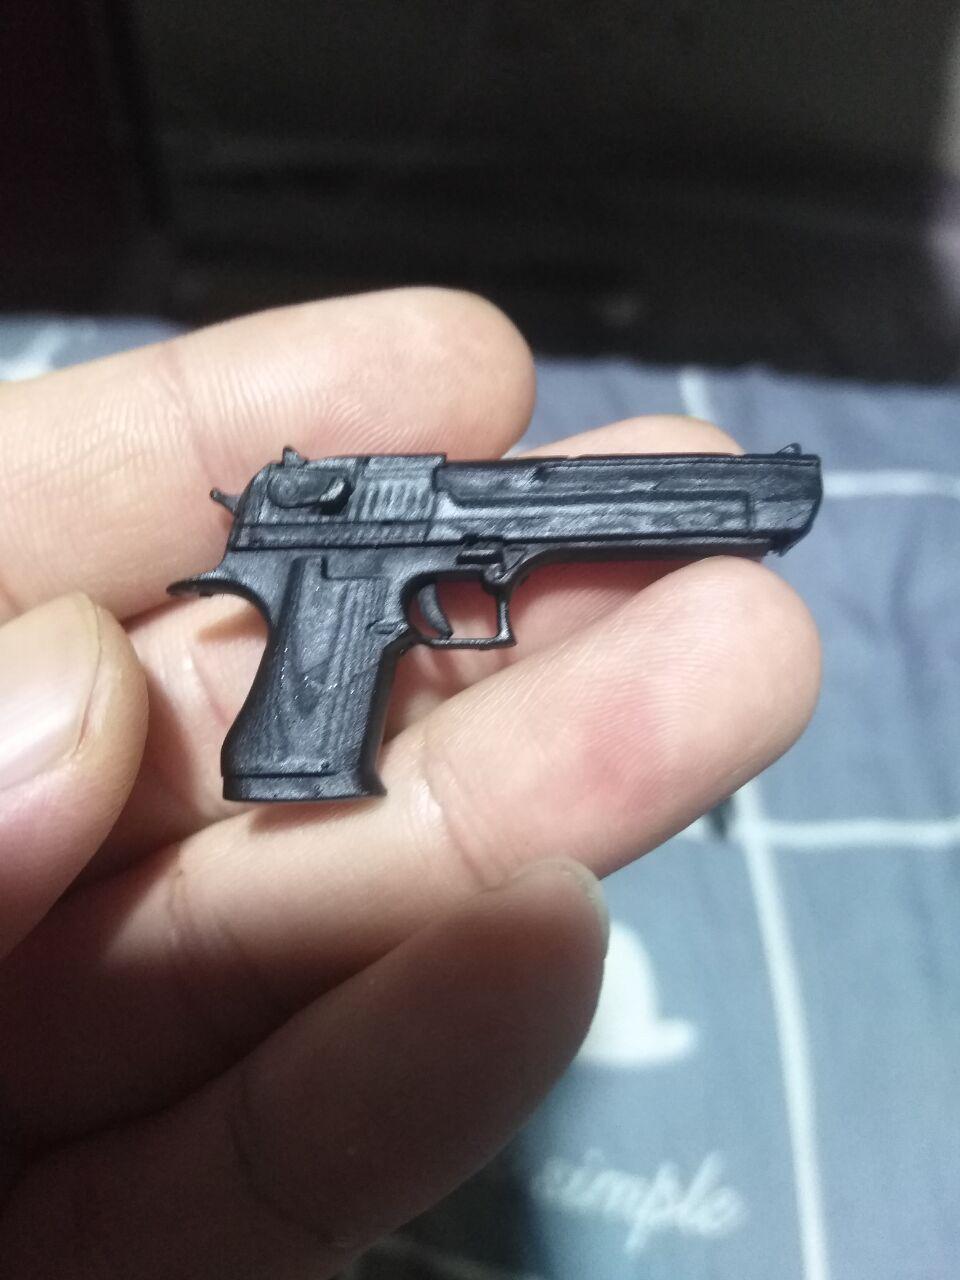 1/6兵人武器沙漠之鹰手枪3D打印模型